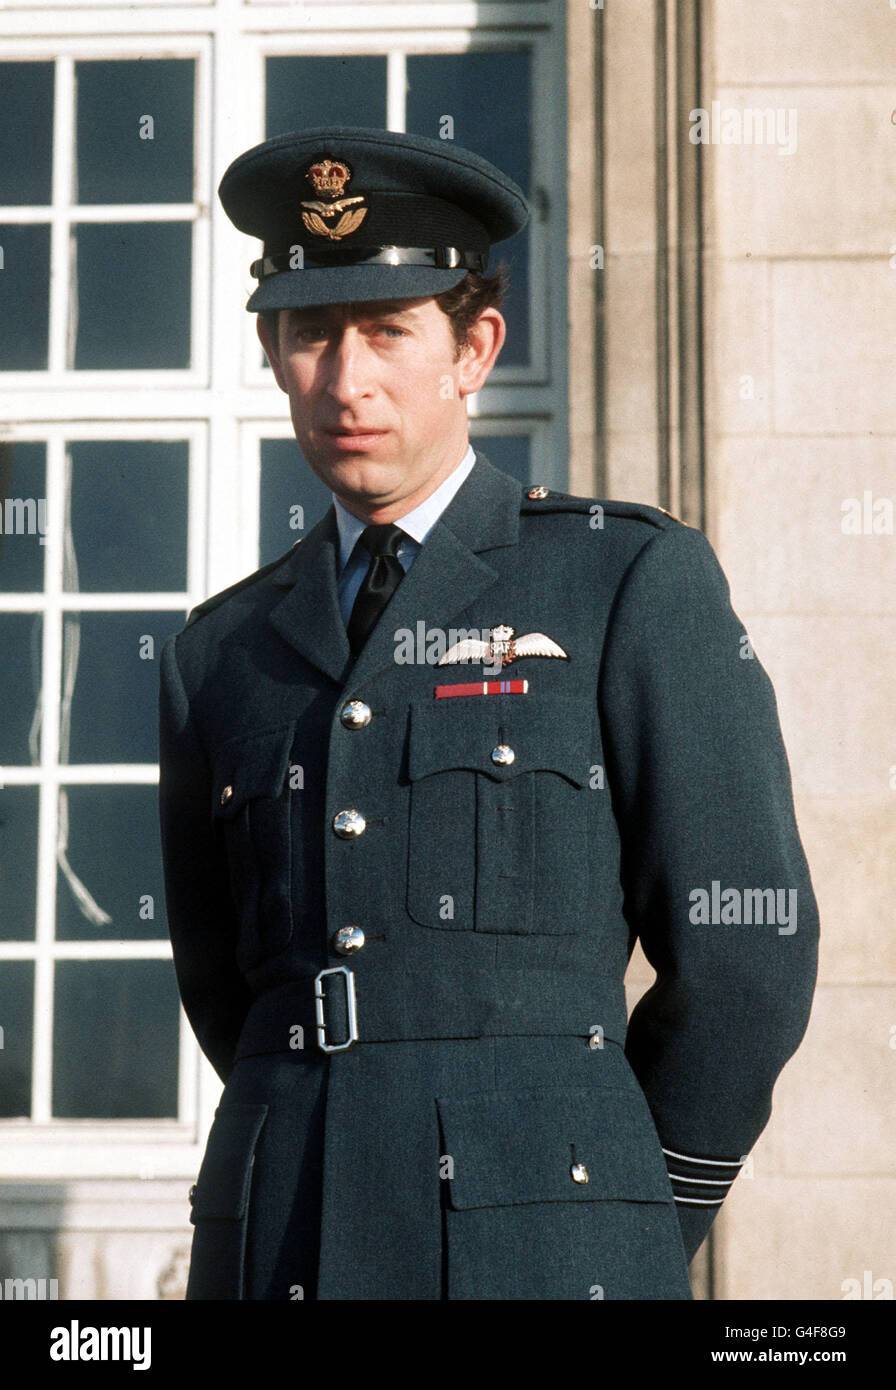 PA NEWS FOTO 7/2/77 Il principe Carlo INDOSSA IL SUO WING COMMANDER'S UNIFORME PER LA PRIMA VOLTA IN PUBBLICO, egli è stato recentemente promosso al rango presso il Collegio di RAF Cranwell, dove egli stava iniziando un ripasso battenti corso di formazione Foto Stock